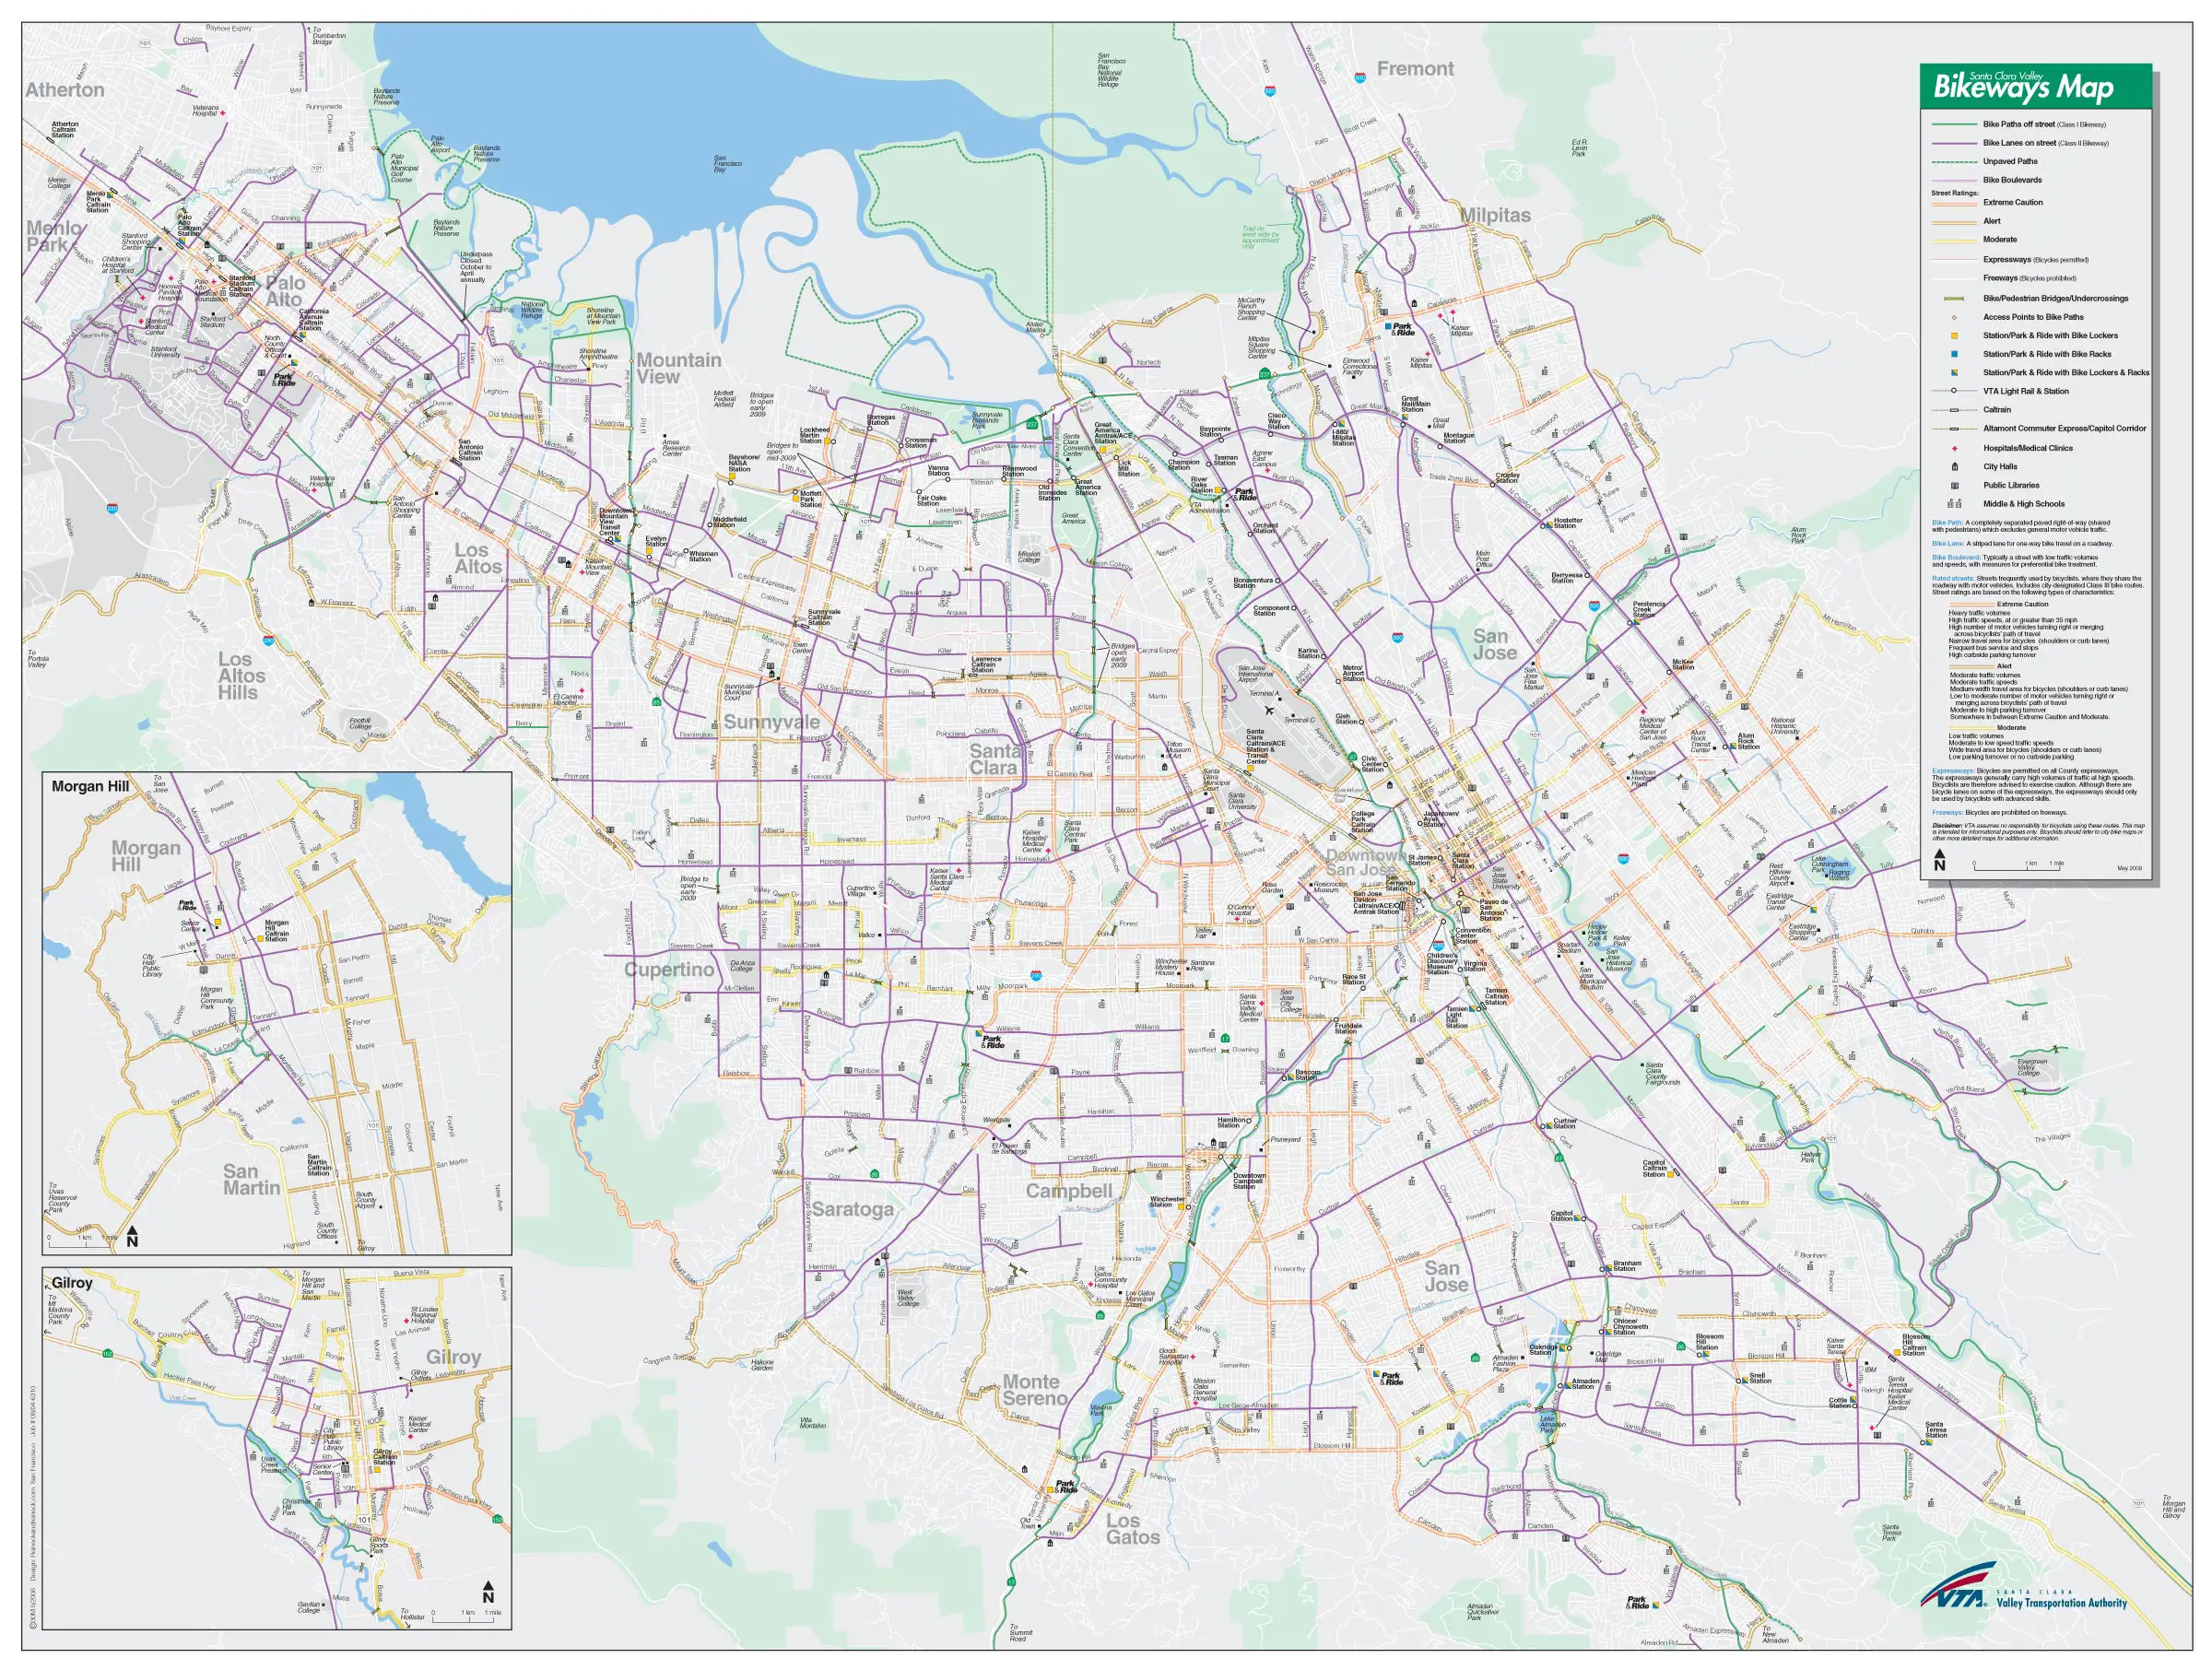 Santa Clara Bike Way Map